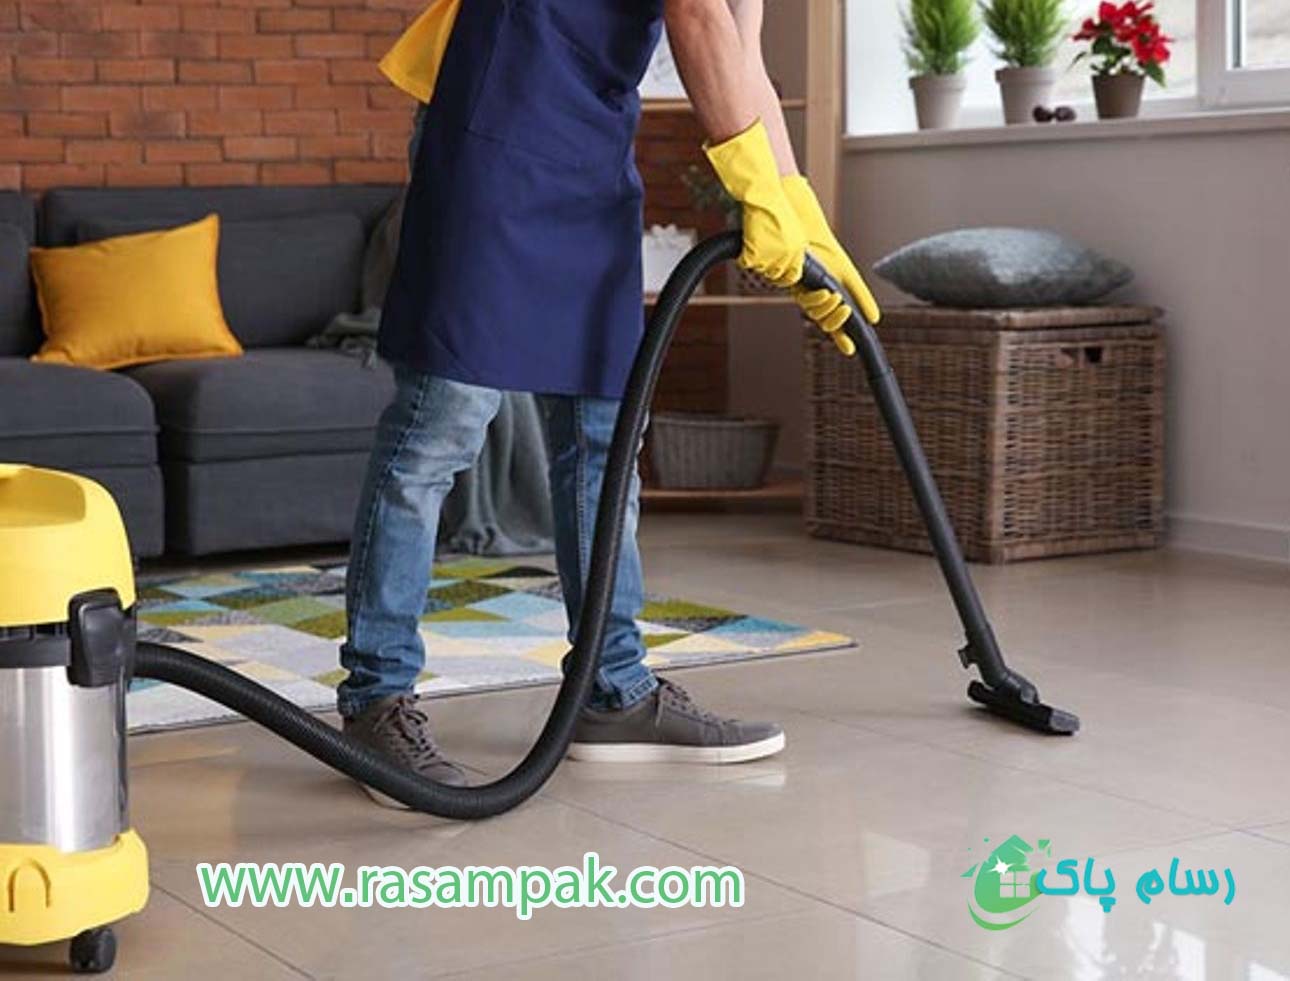 نظافت منزل در تهران شرکت نظافتی رسام پاک